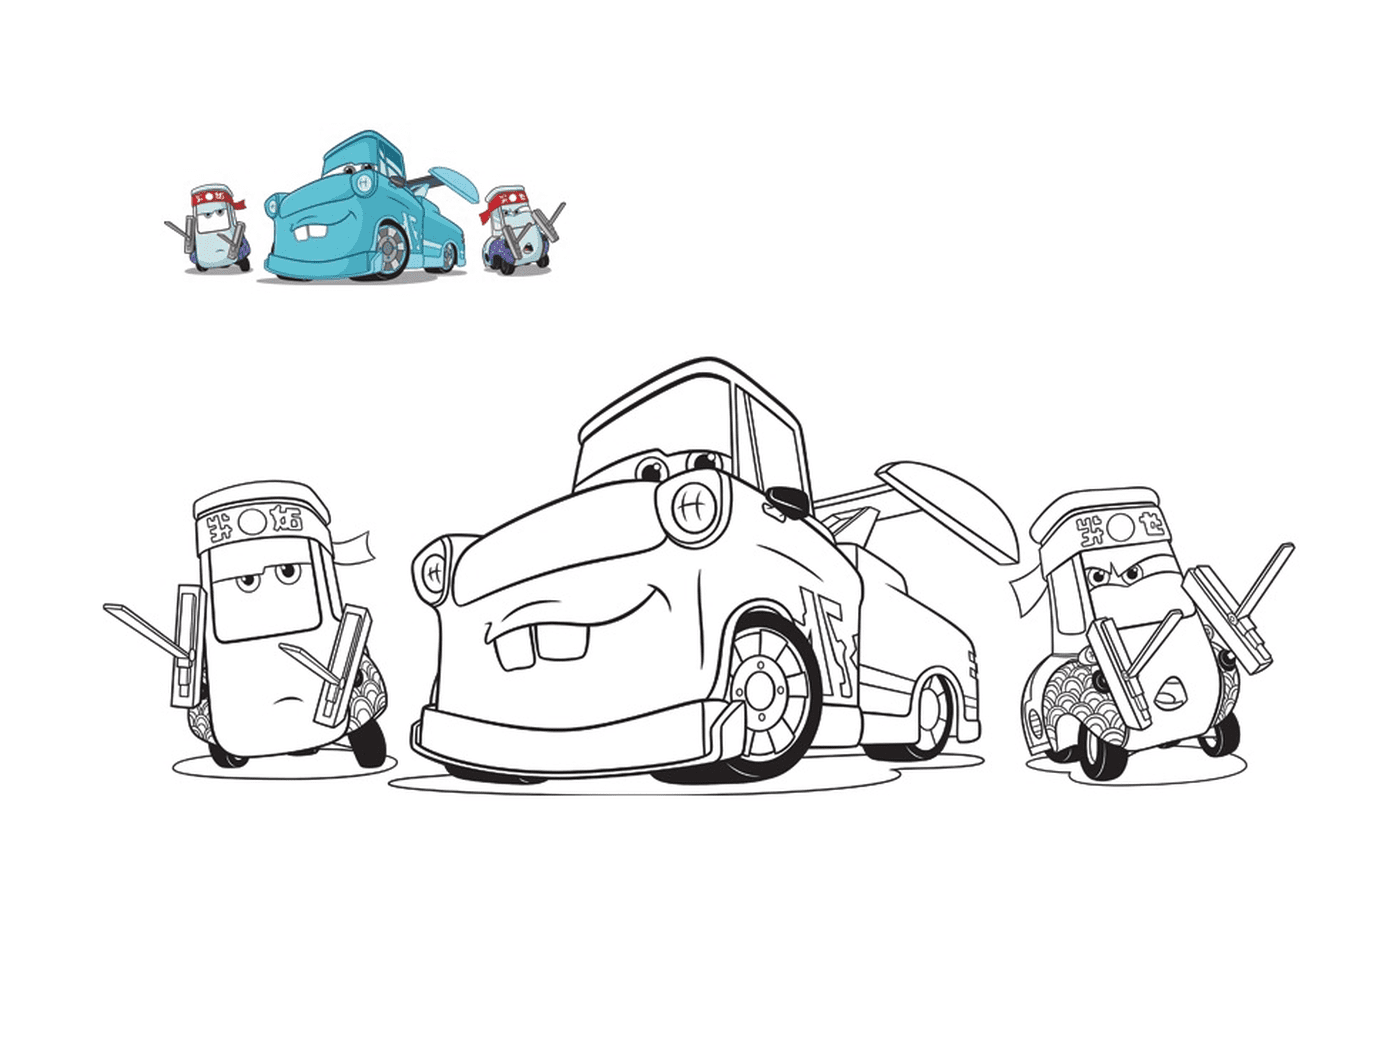  Carros 3, Guido e seus amigos, caminhão de reboque mecânico, linha de um carro com um carro no chão 